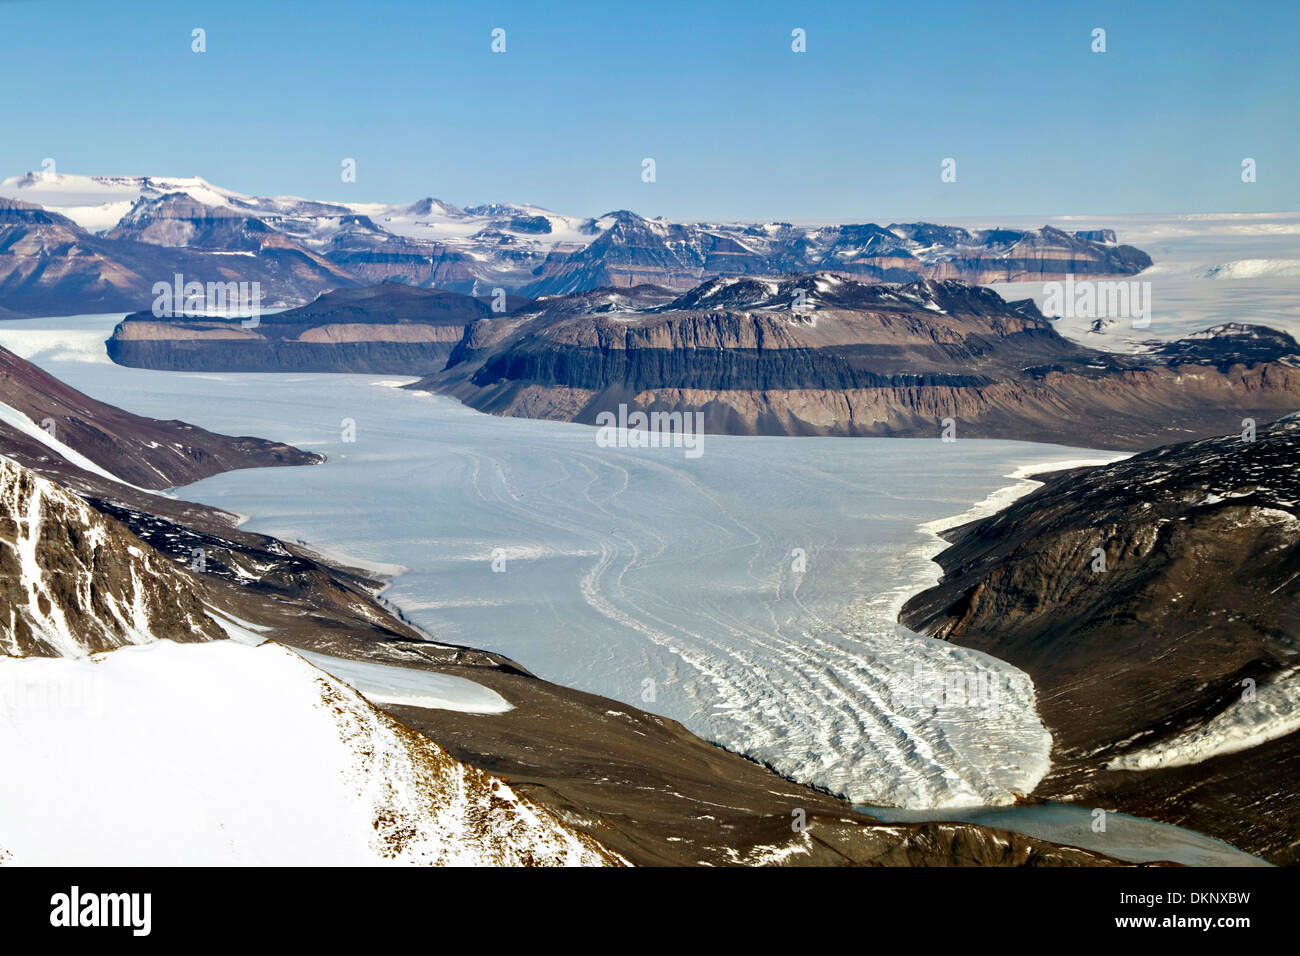 Luftaufnahme des Taylor-Gletschers, eine Erkältung basierte Gletscher in das Taylor-Tal ein einzigartiges trockenen Tal mit markanten Felsen und eines der abgelegensten und geologisch exotische Orte auf der Welt. Stockfoto